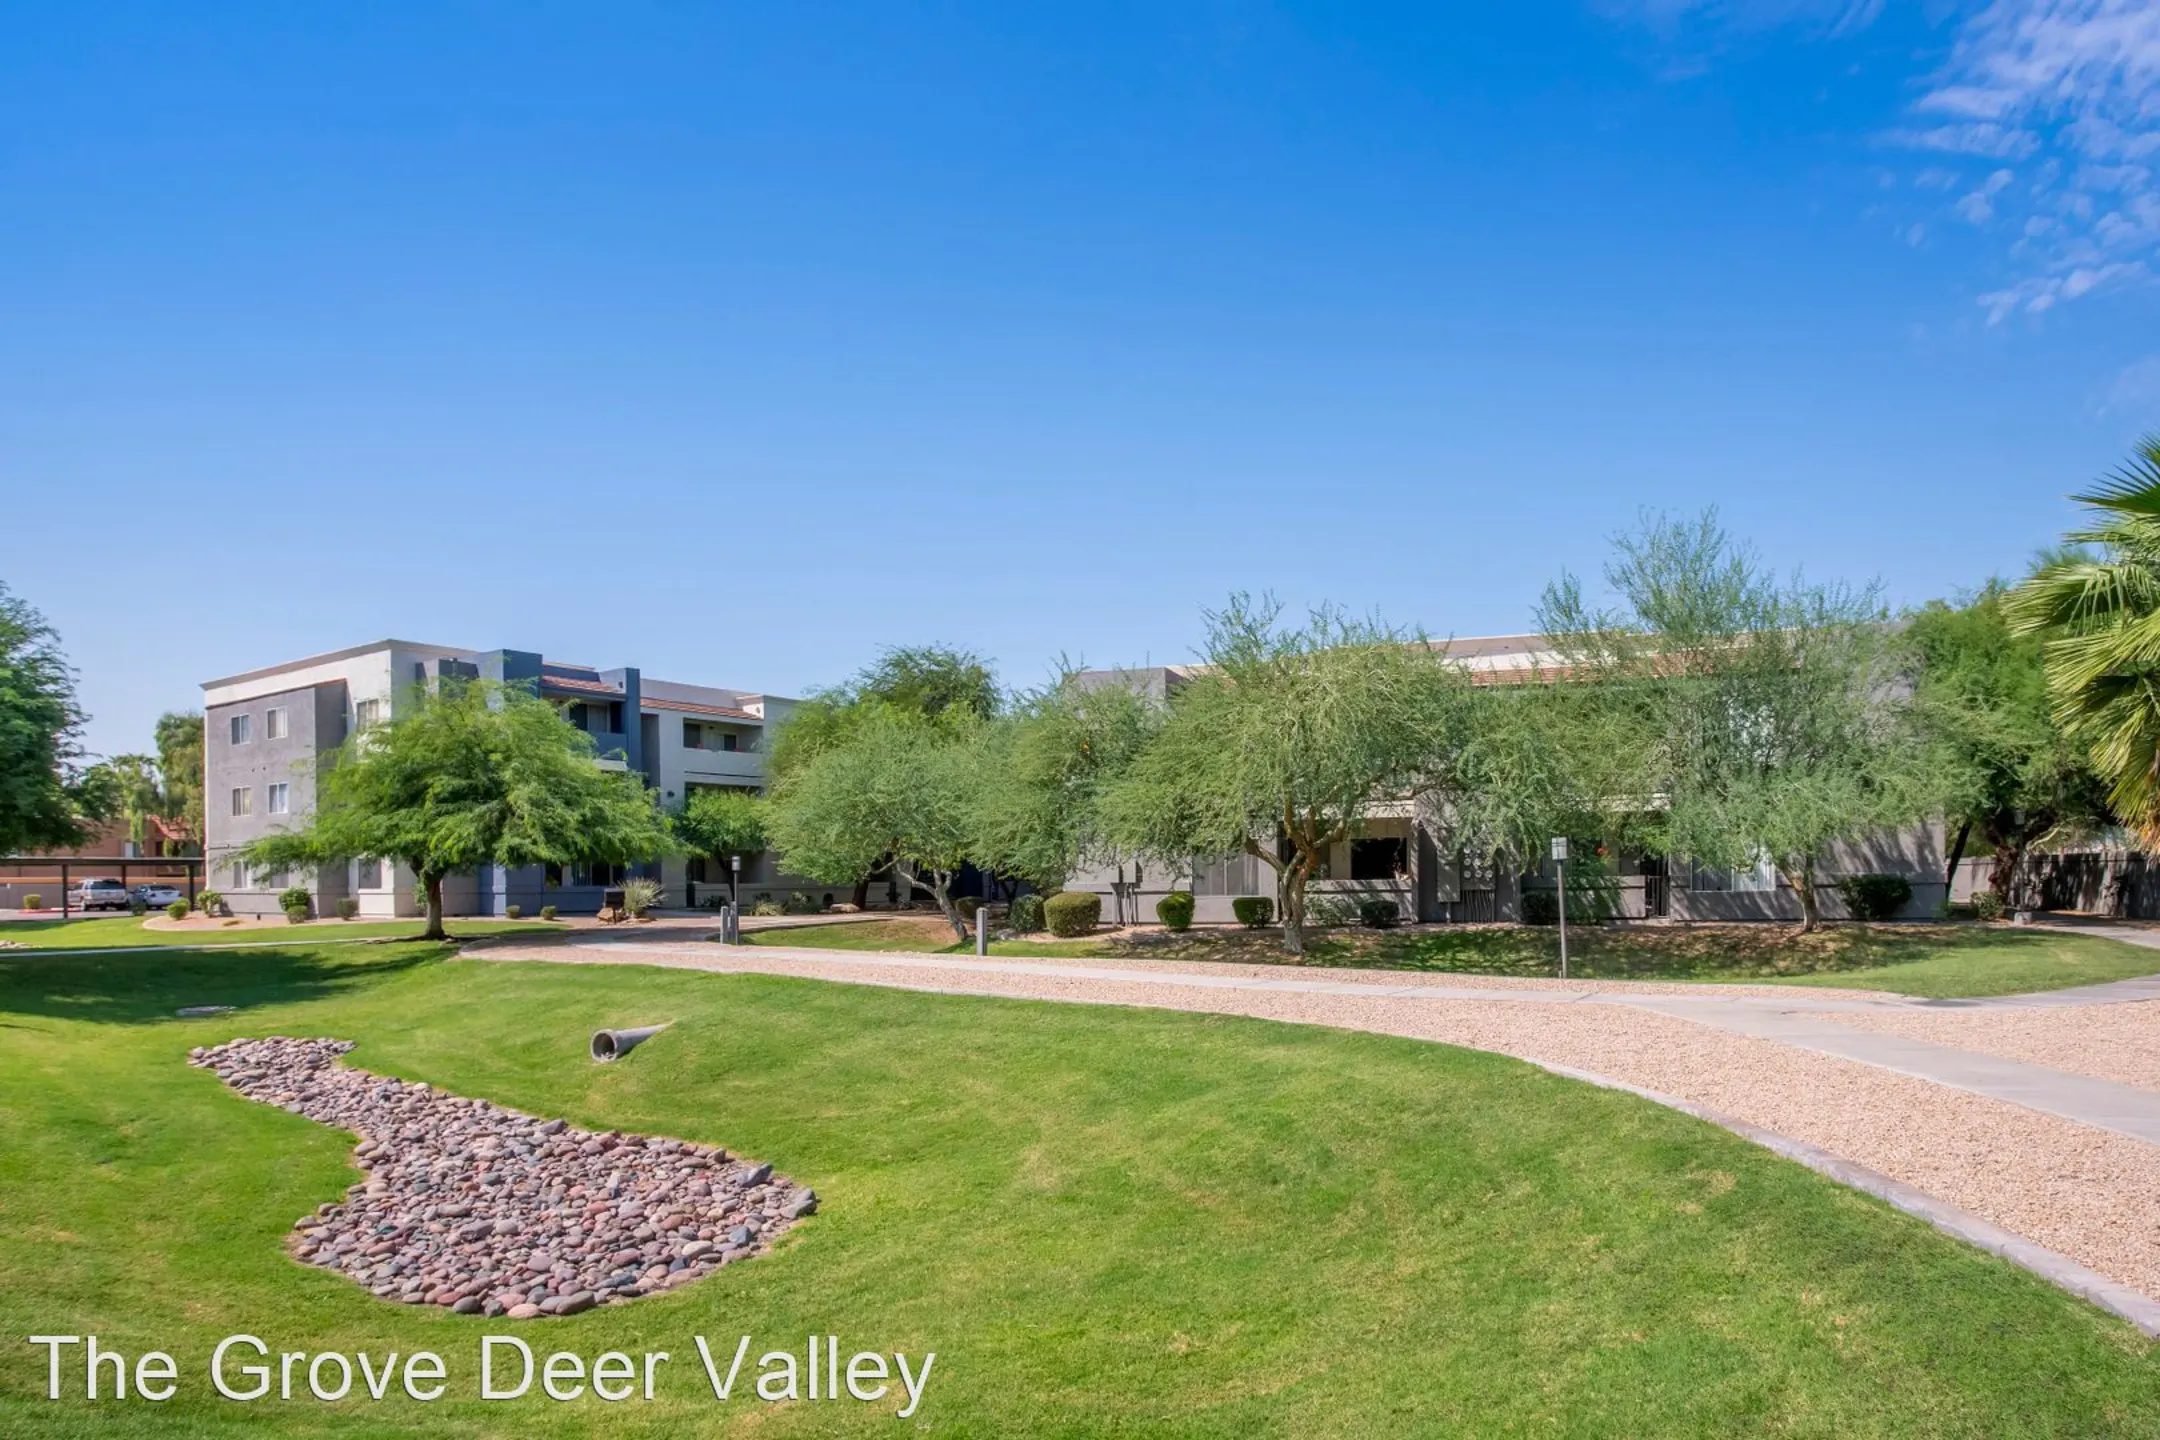 Building - The Grove Deer Valley - Phoenix, AZ